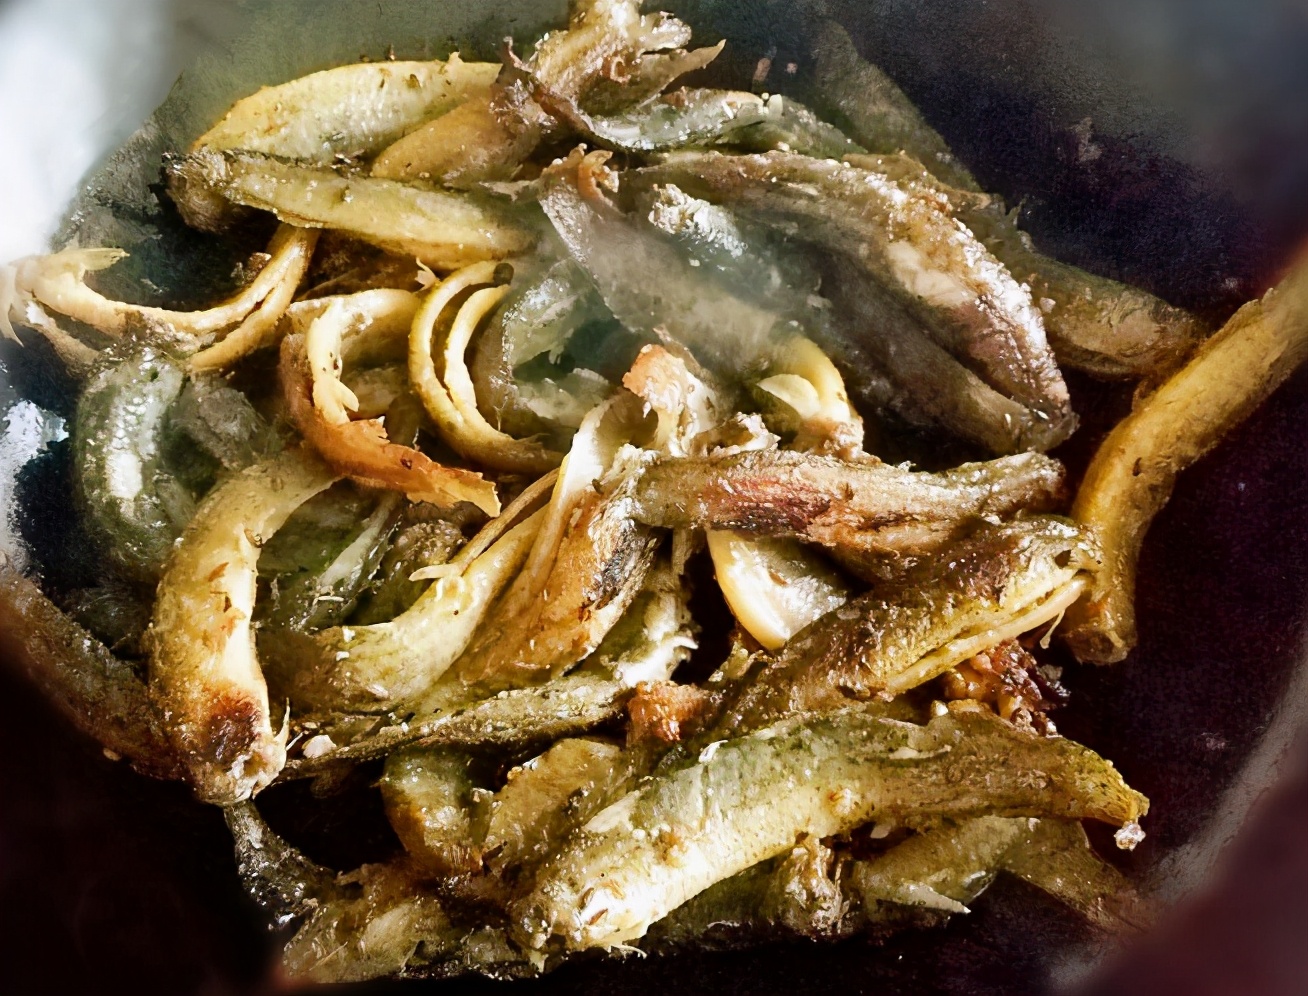 美食图片欣赏——营养美味的泥鳅菜肴